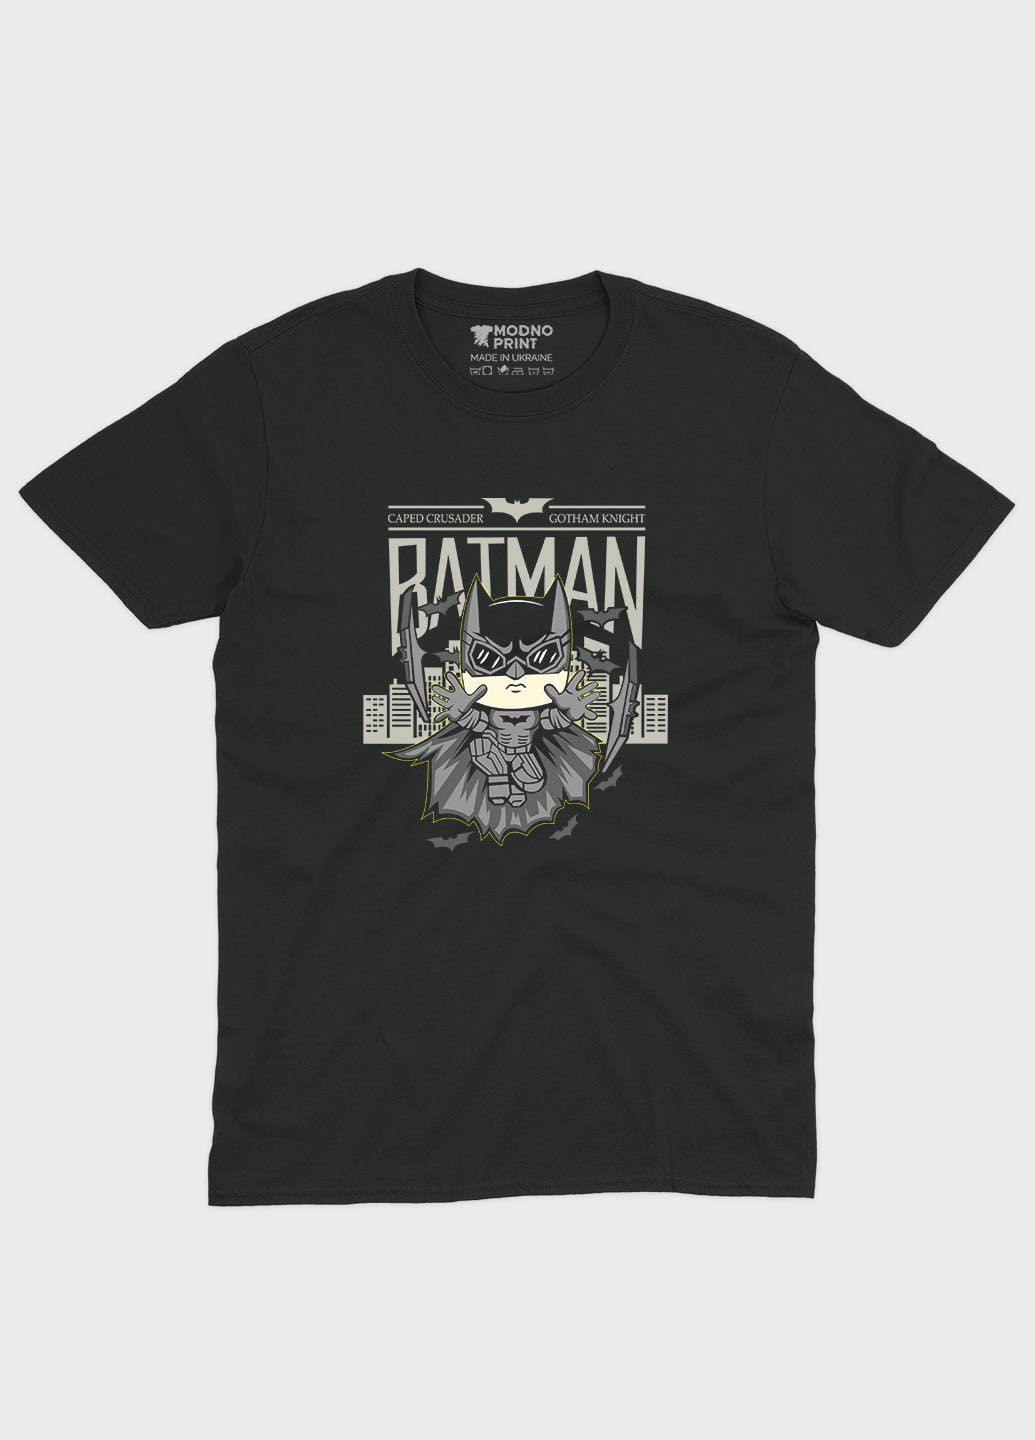 Черная мужская футболка с принтом супергероя - бэтмен (ts001-1-bl-006-003-037) Modno